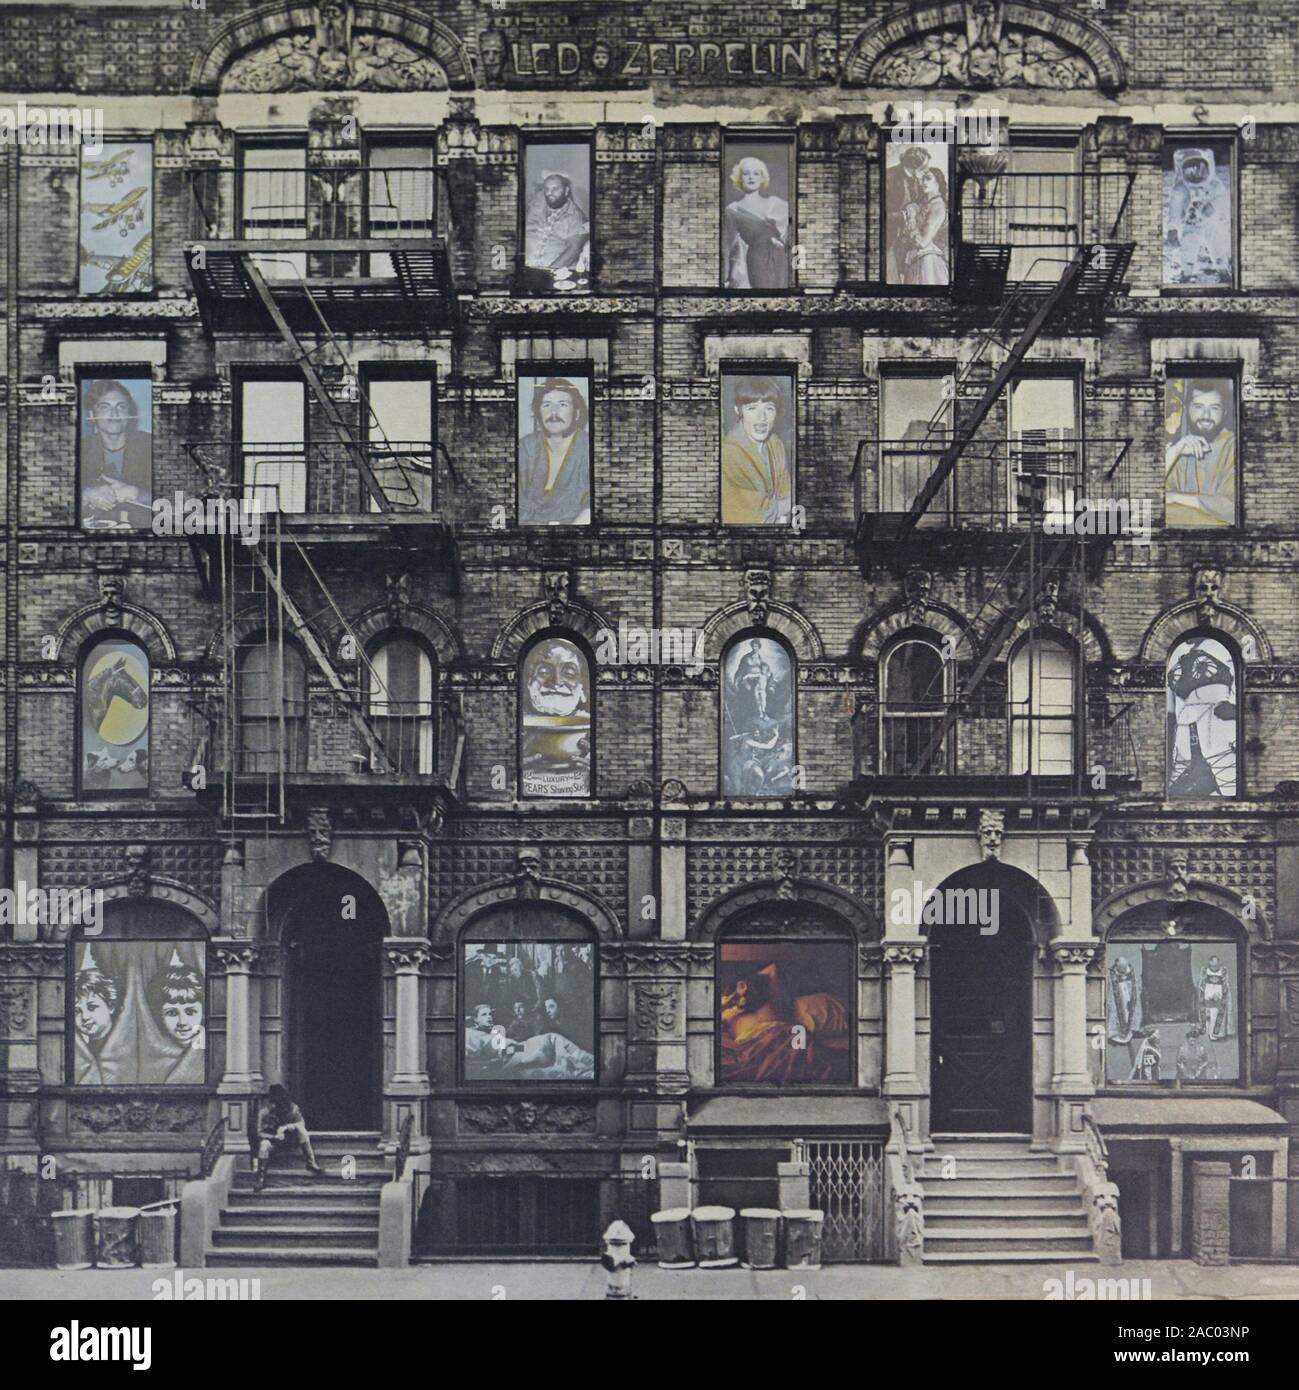 Vista De La Colección De Registros De Vinilo De La Banda Led Zeppelin  Imagen editorial - Imagen de conducido, colorido: 168653970